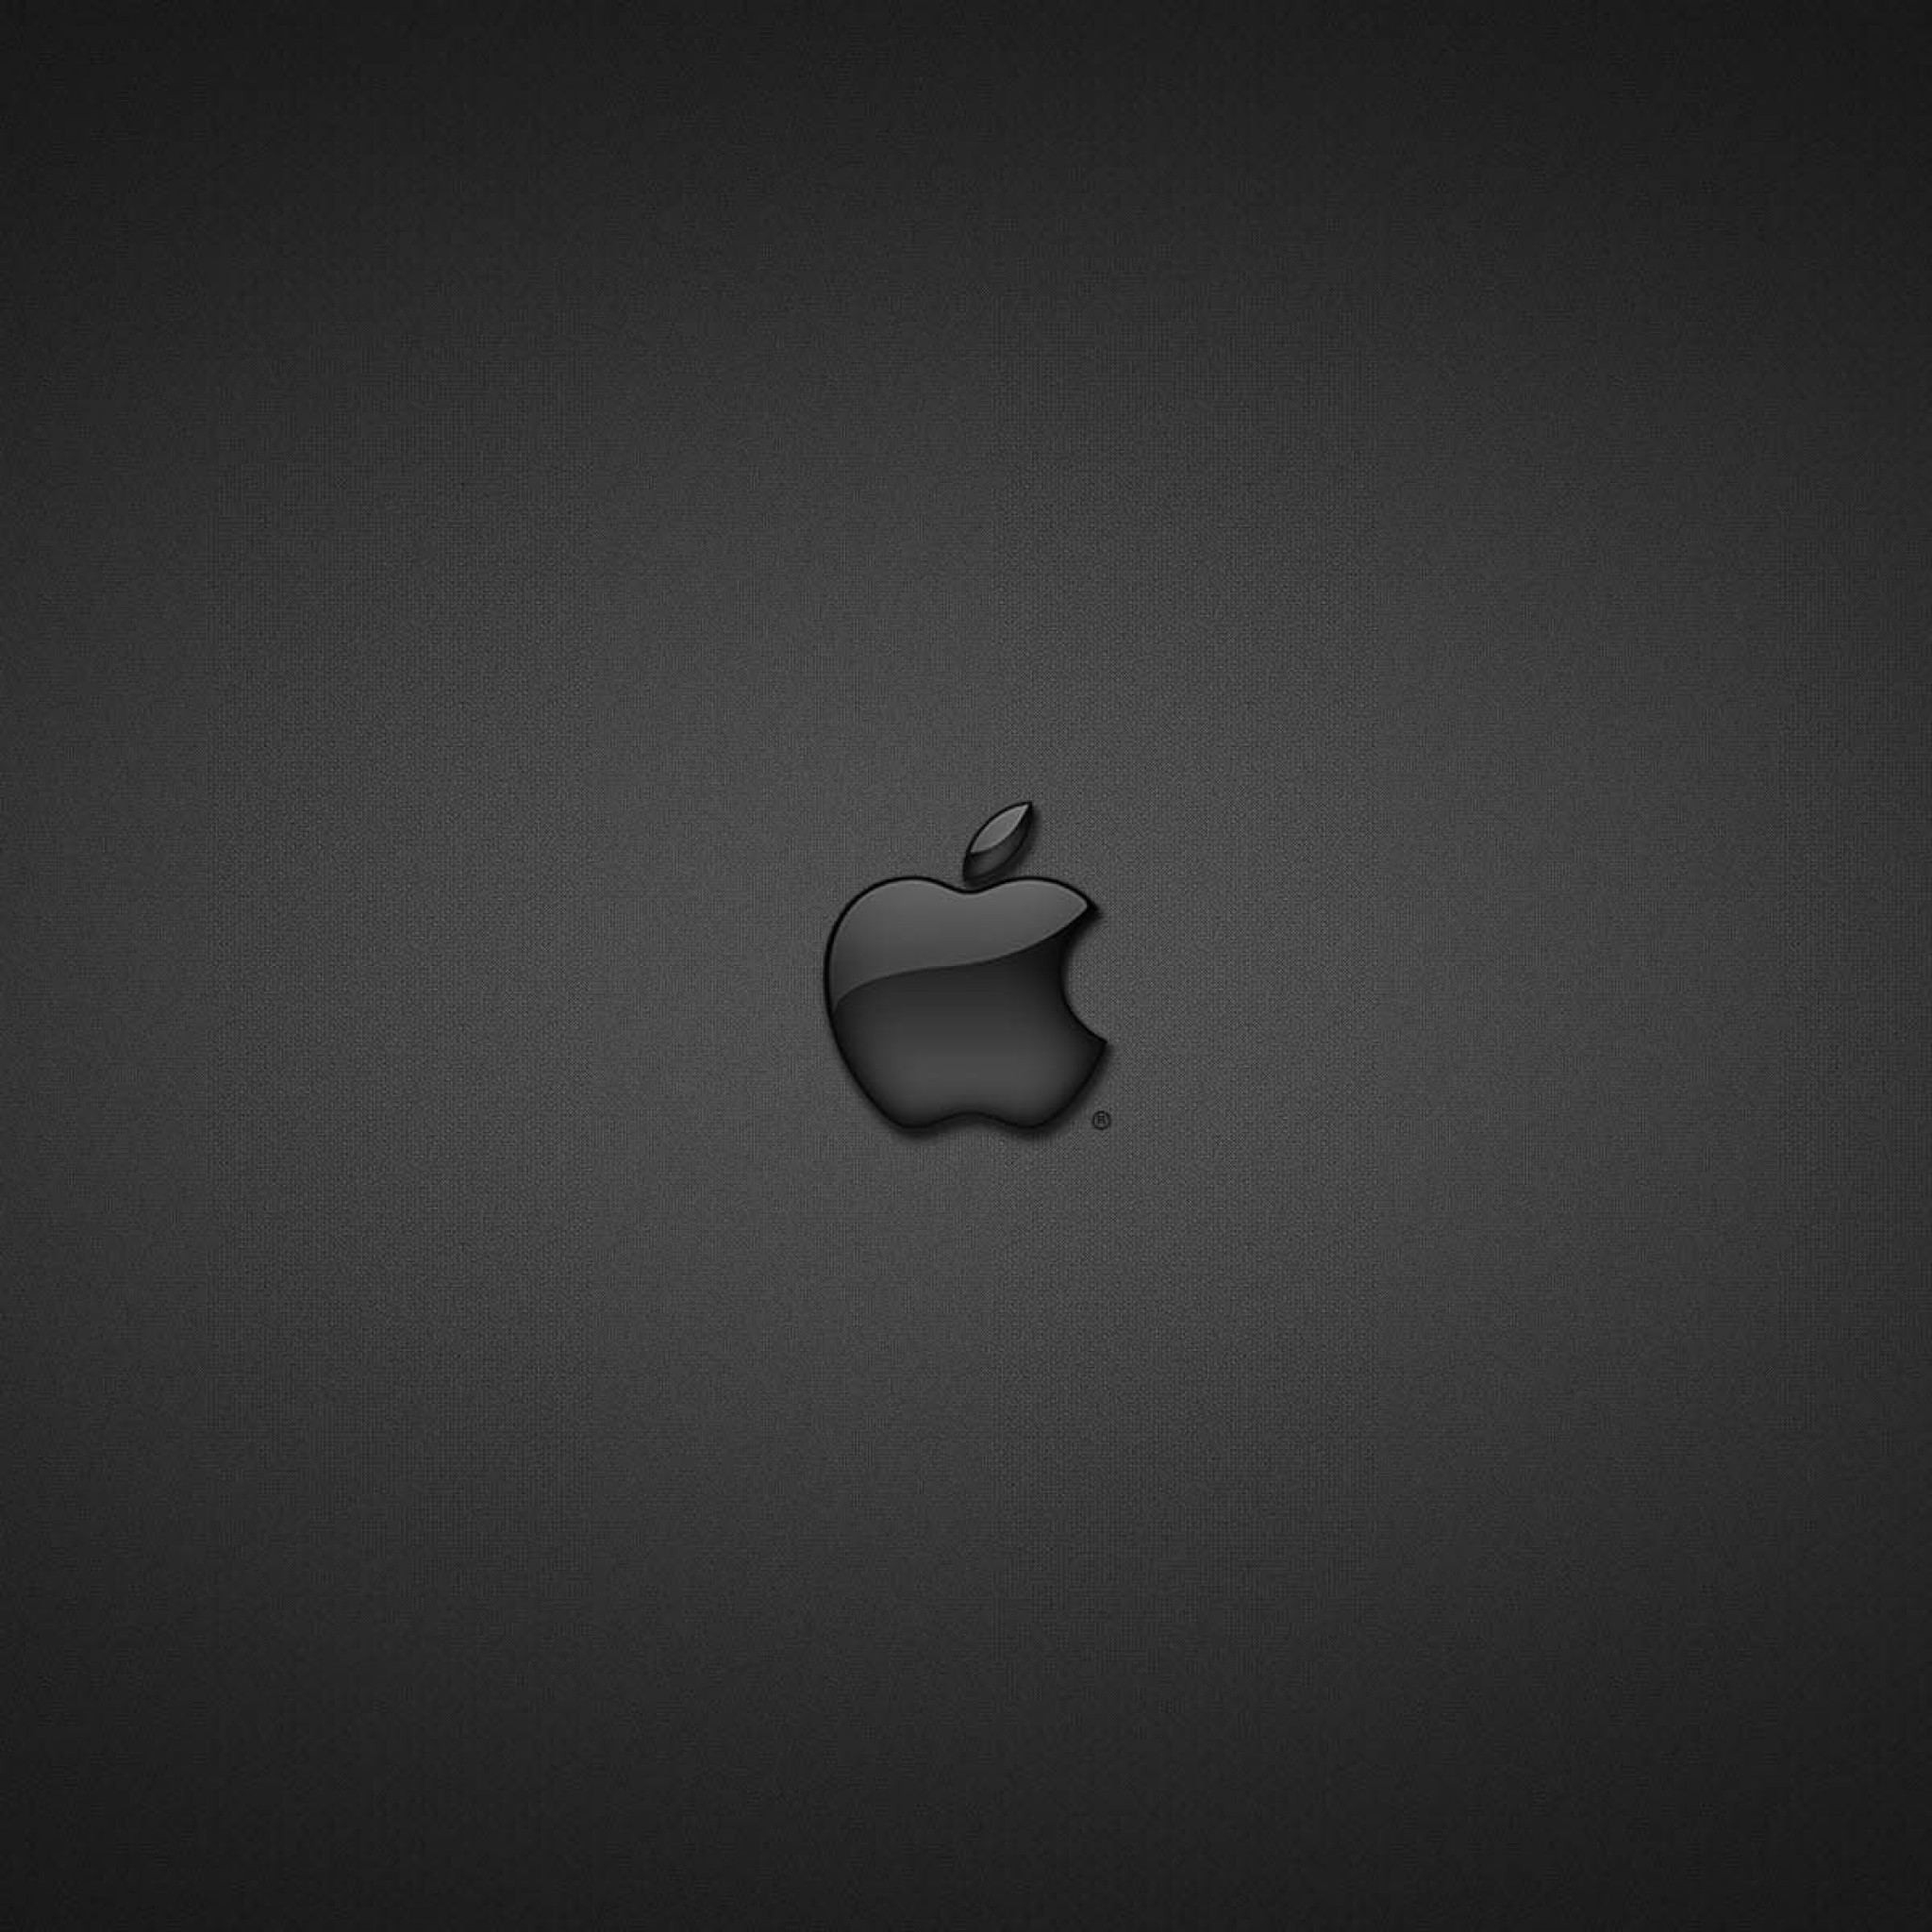 Значки айфона 13. Значок айфона. Логотип Apple. Яблоко айфон. Яблочко айфона маленькое.